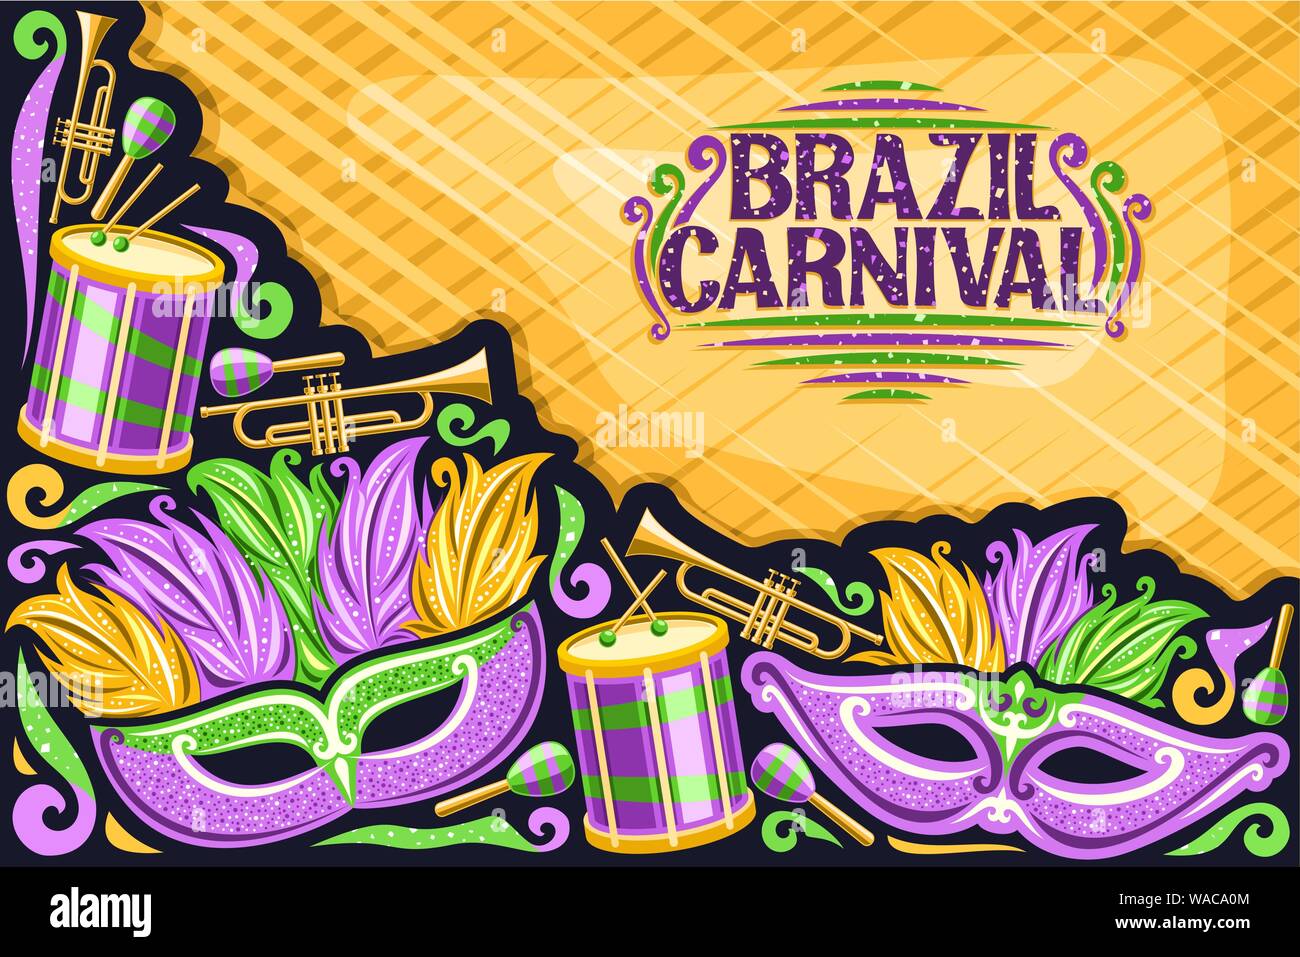 Vektor Grußkarte für Brasilien Karneval mit Kopie Raum, Illustration von Purple mask, Schlagzeug mit Trommelstöcken, Vorlage für Karneval in Rio de Janeiro, Stock Vektor